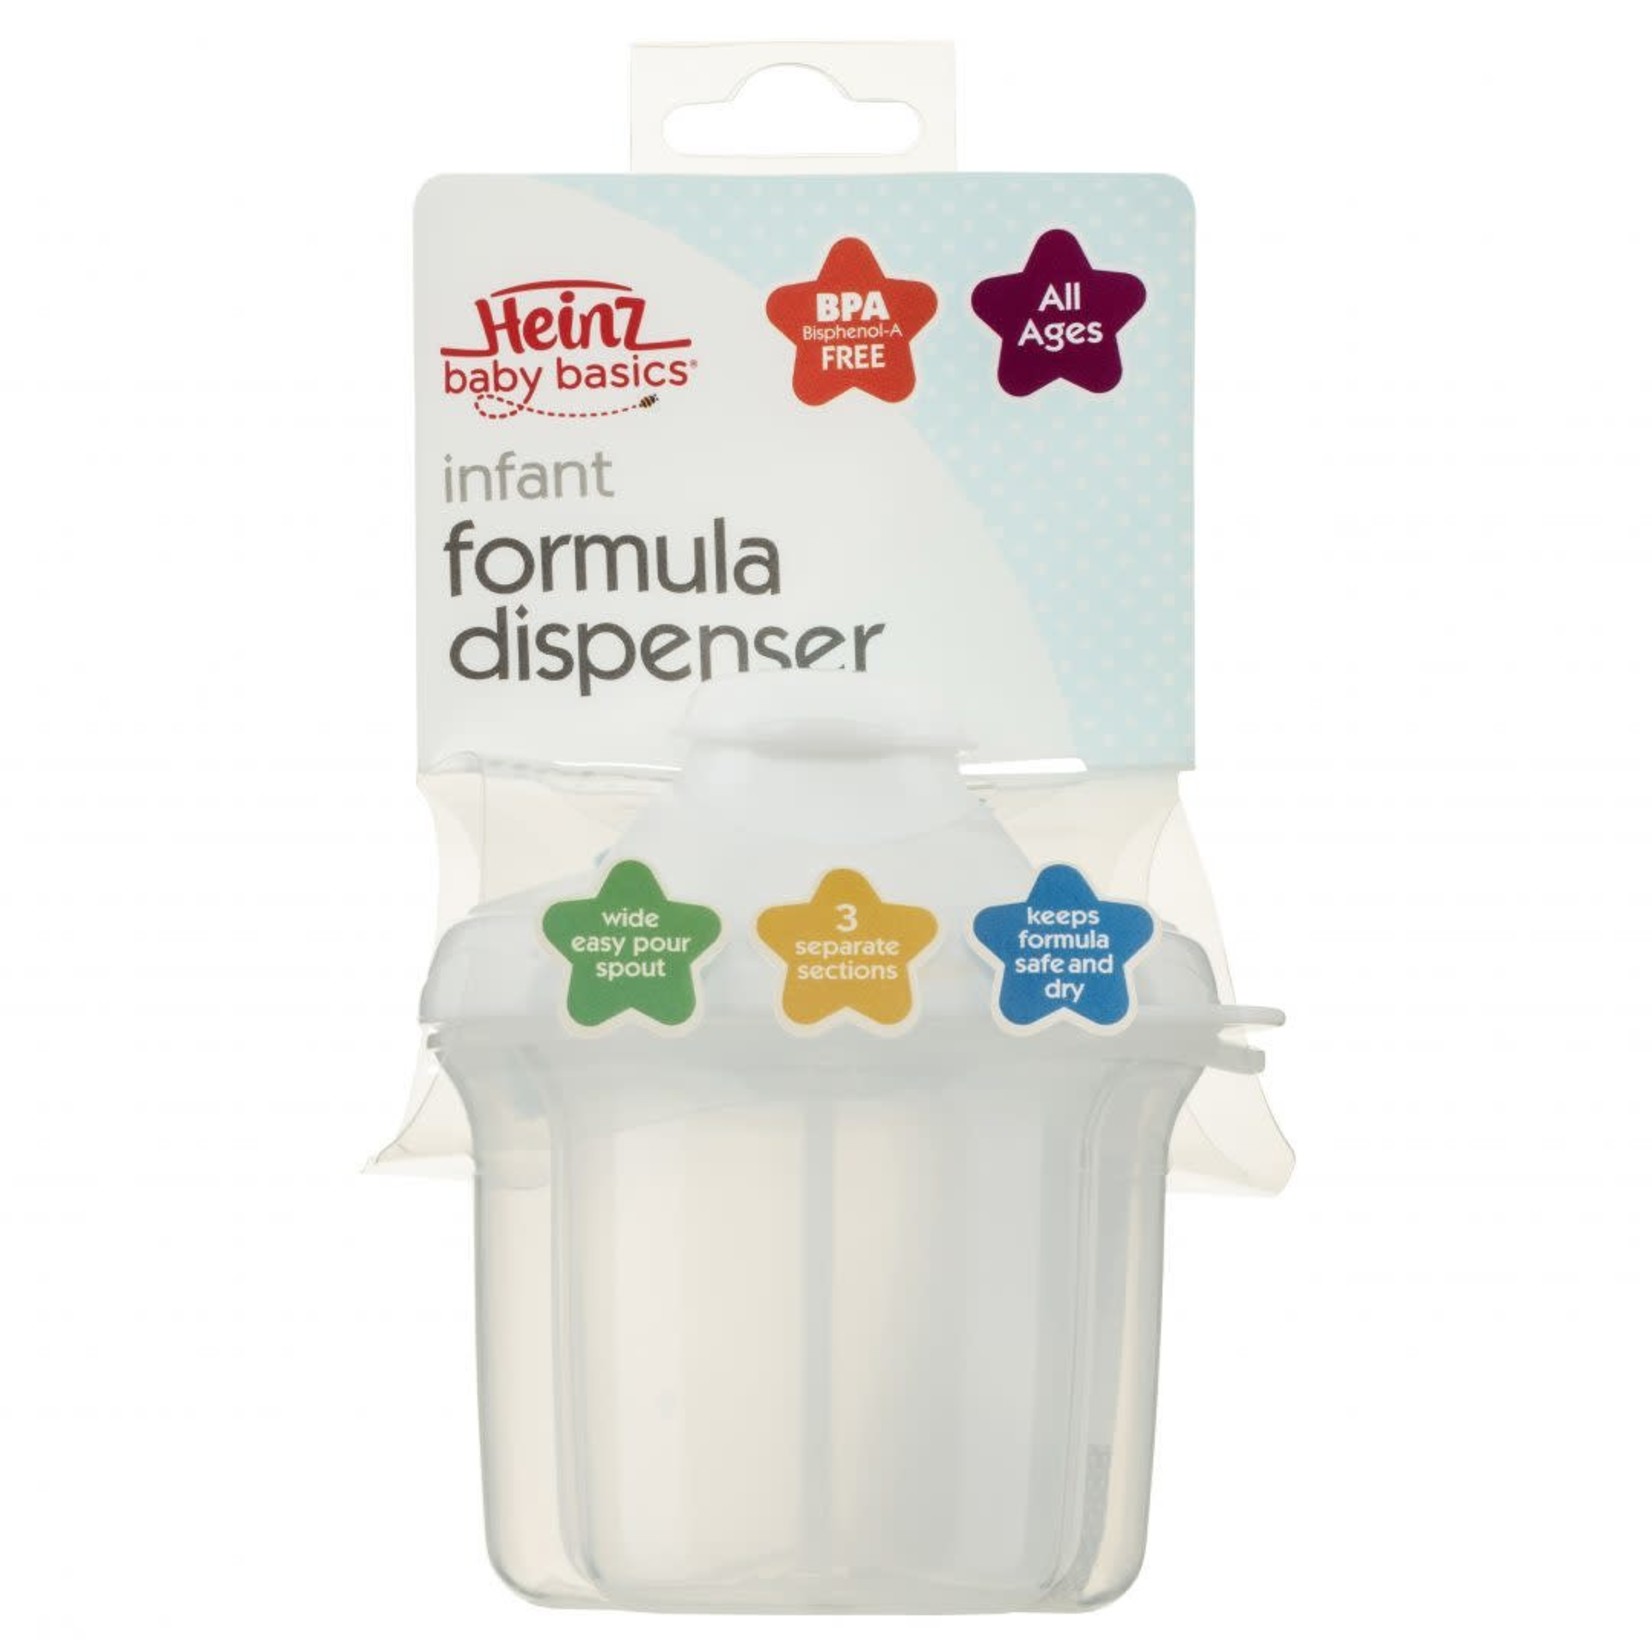 Heinz Baby Basics Infant Formula Dispenser